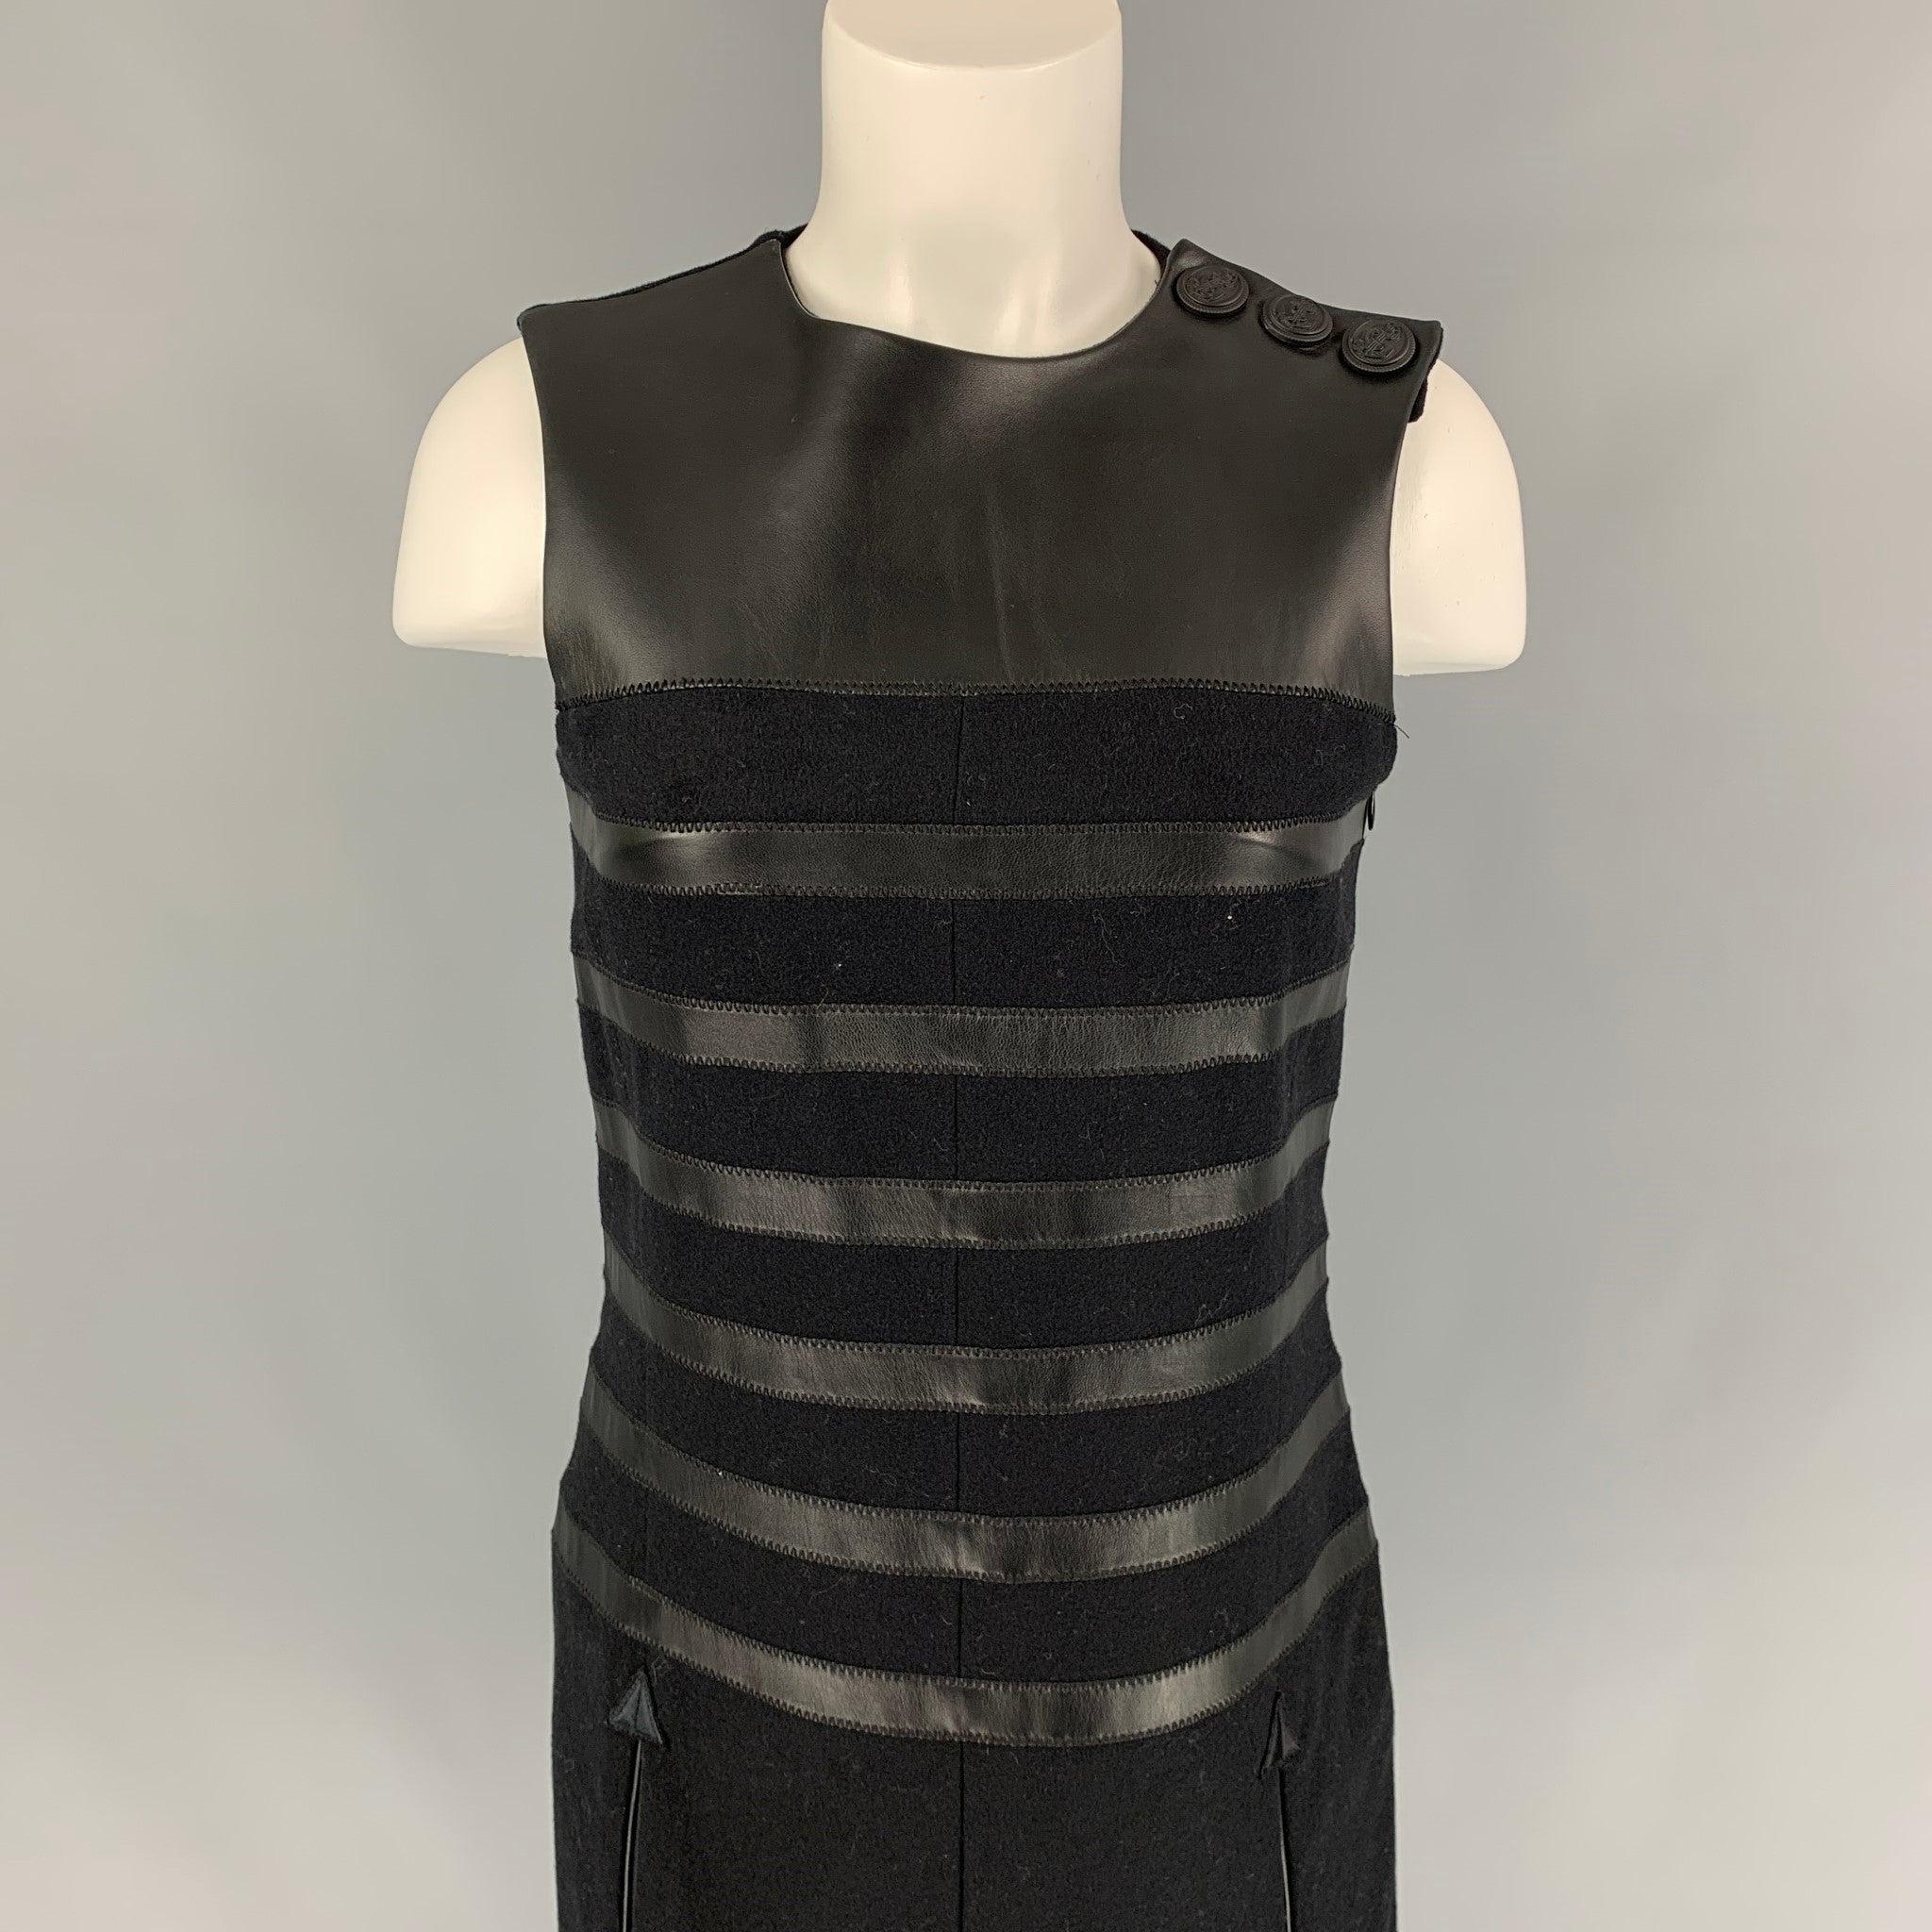 La robe JEAN PAUL GAULTIER se compose de laine mélangée noire et de détails en cuir. Elle présente un style décontracté, des poches fendues, une fente sur le devant, une fente dans le dos, trois boutons sur l'épaule et une fermeture zippée sur le